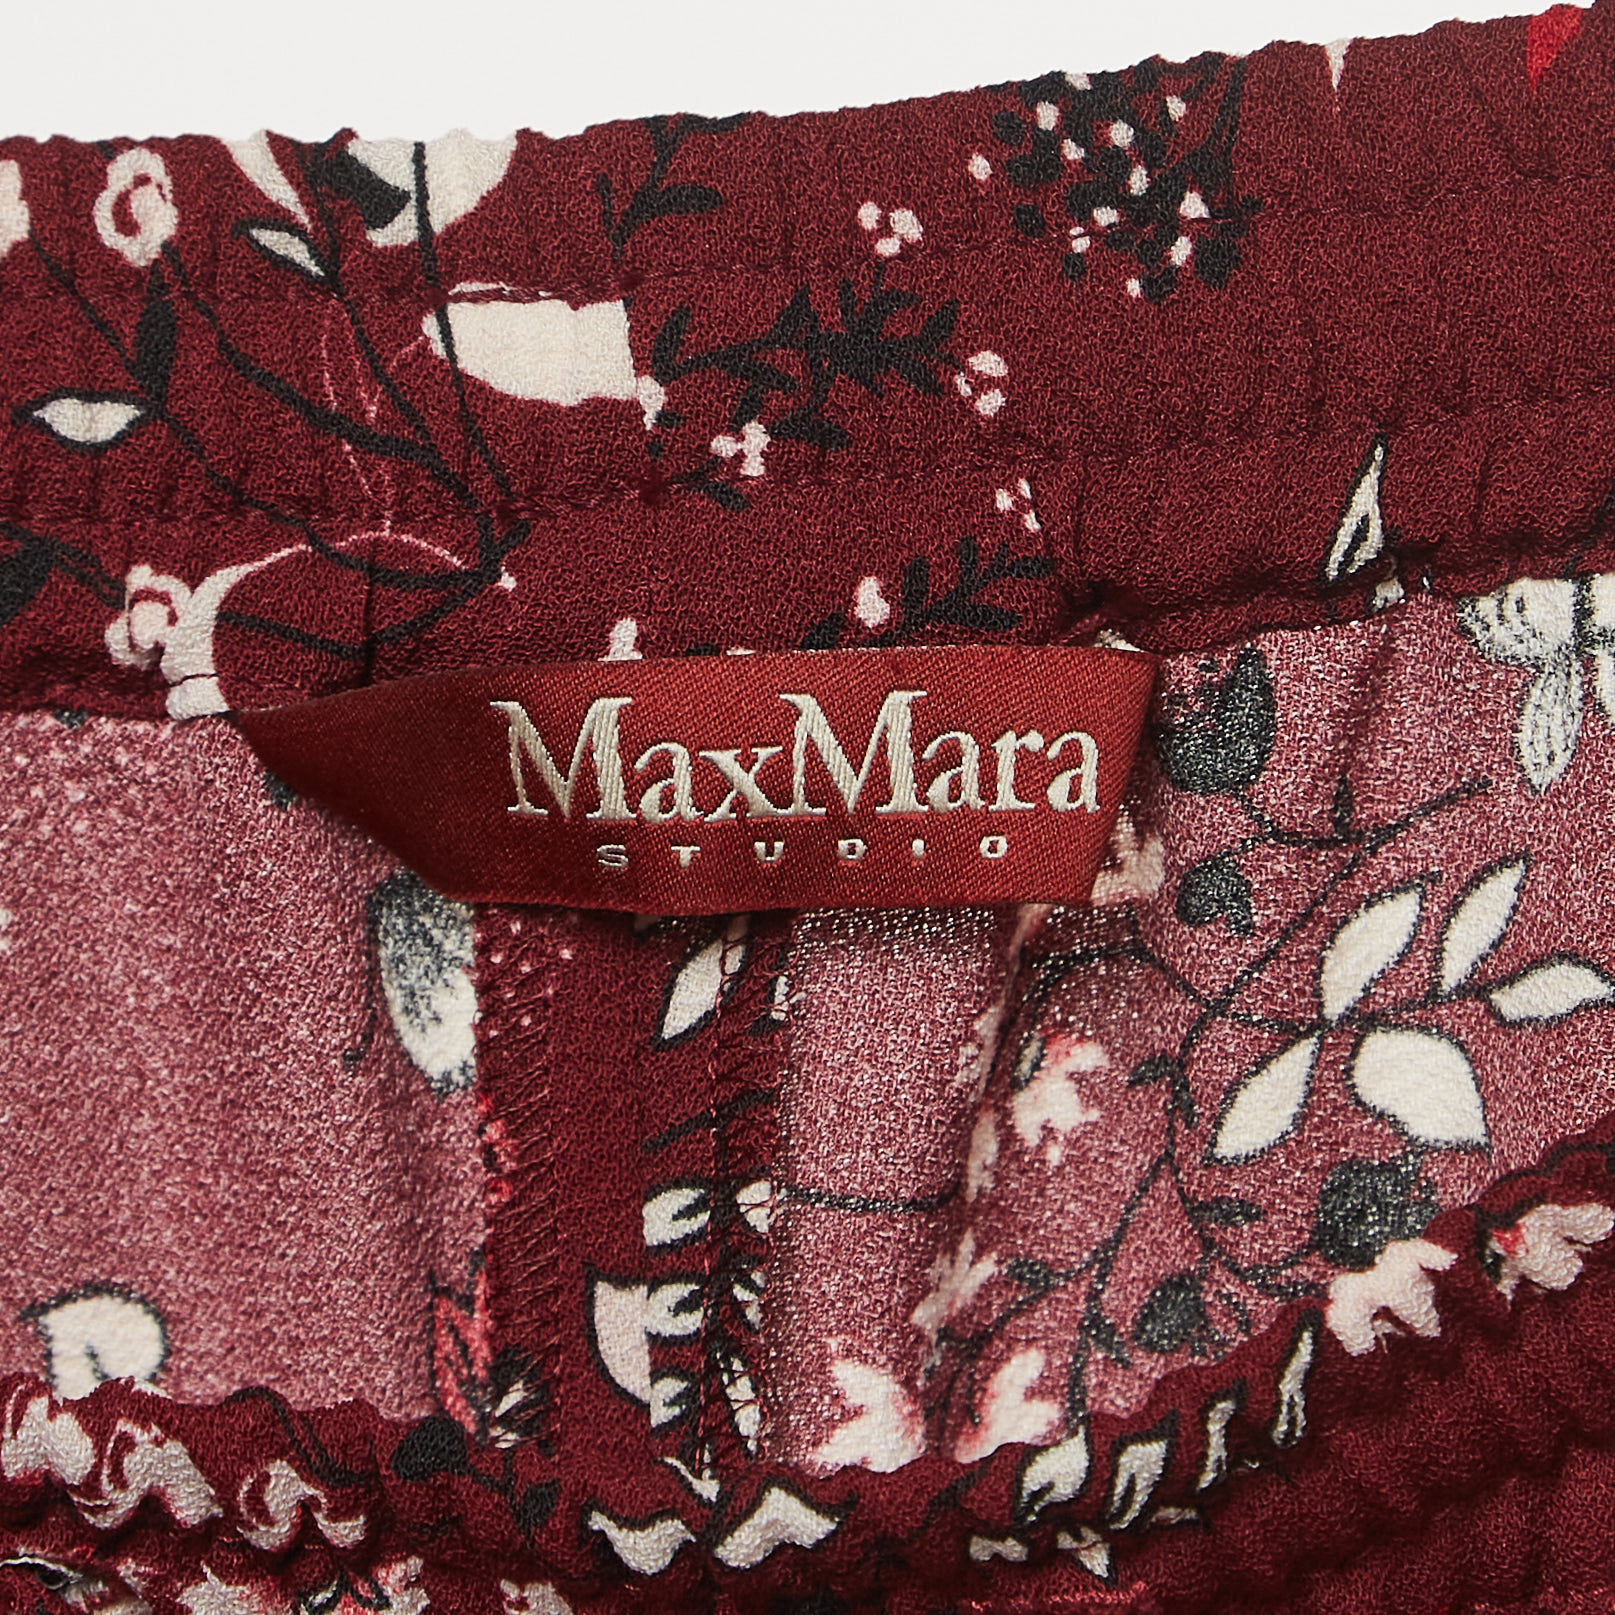 Max Mara Studio Burgundy Floral Print Crepe Drawstring Palazzo Pants M